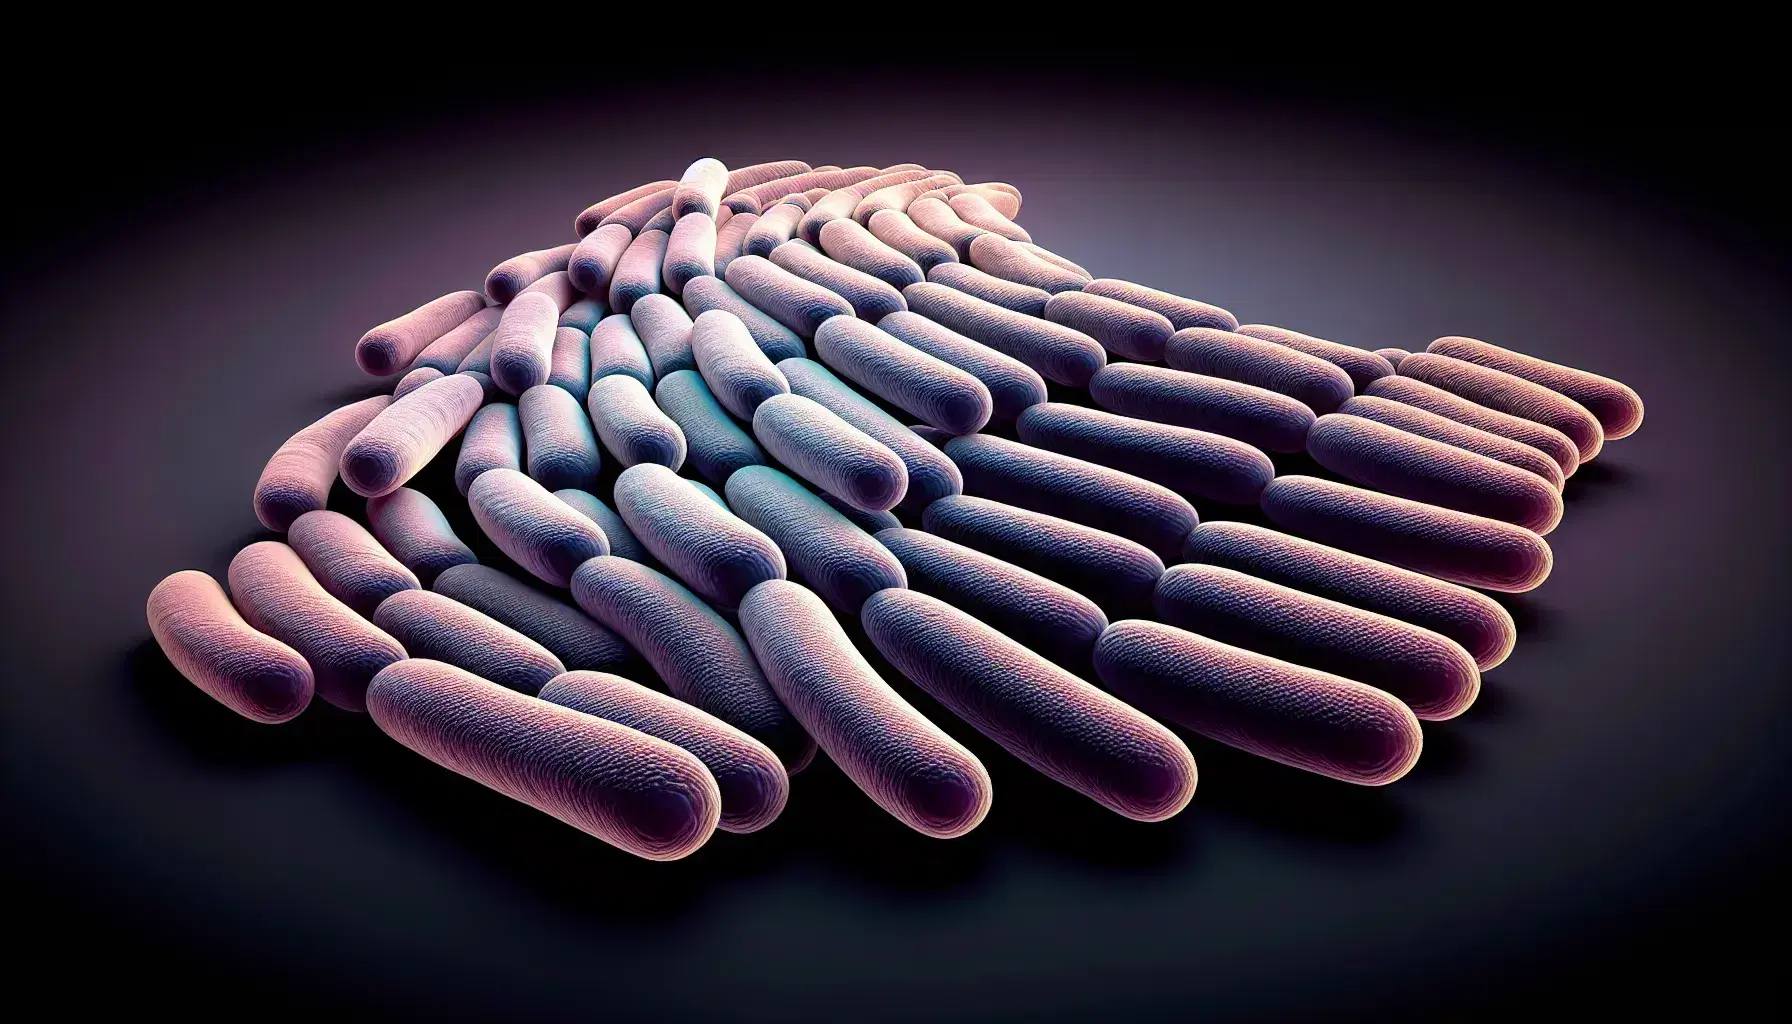 Células bacterianas alargadas y curvadas teñidas en tonos rosa pálido a púrpura claro, dispuestas en cadena con fondo oscuro y efecto de sombra para resaltar su forma tridimensional.